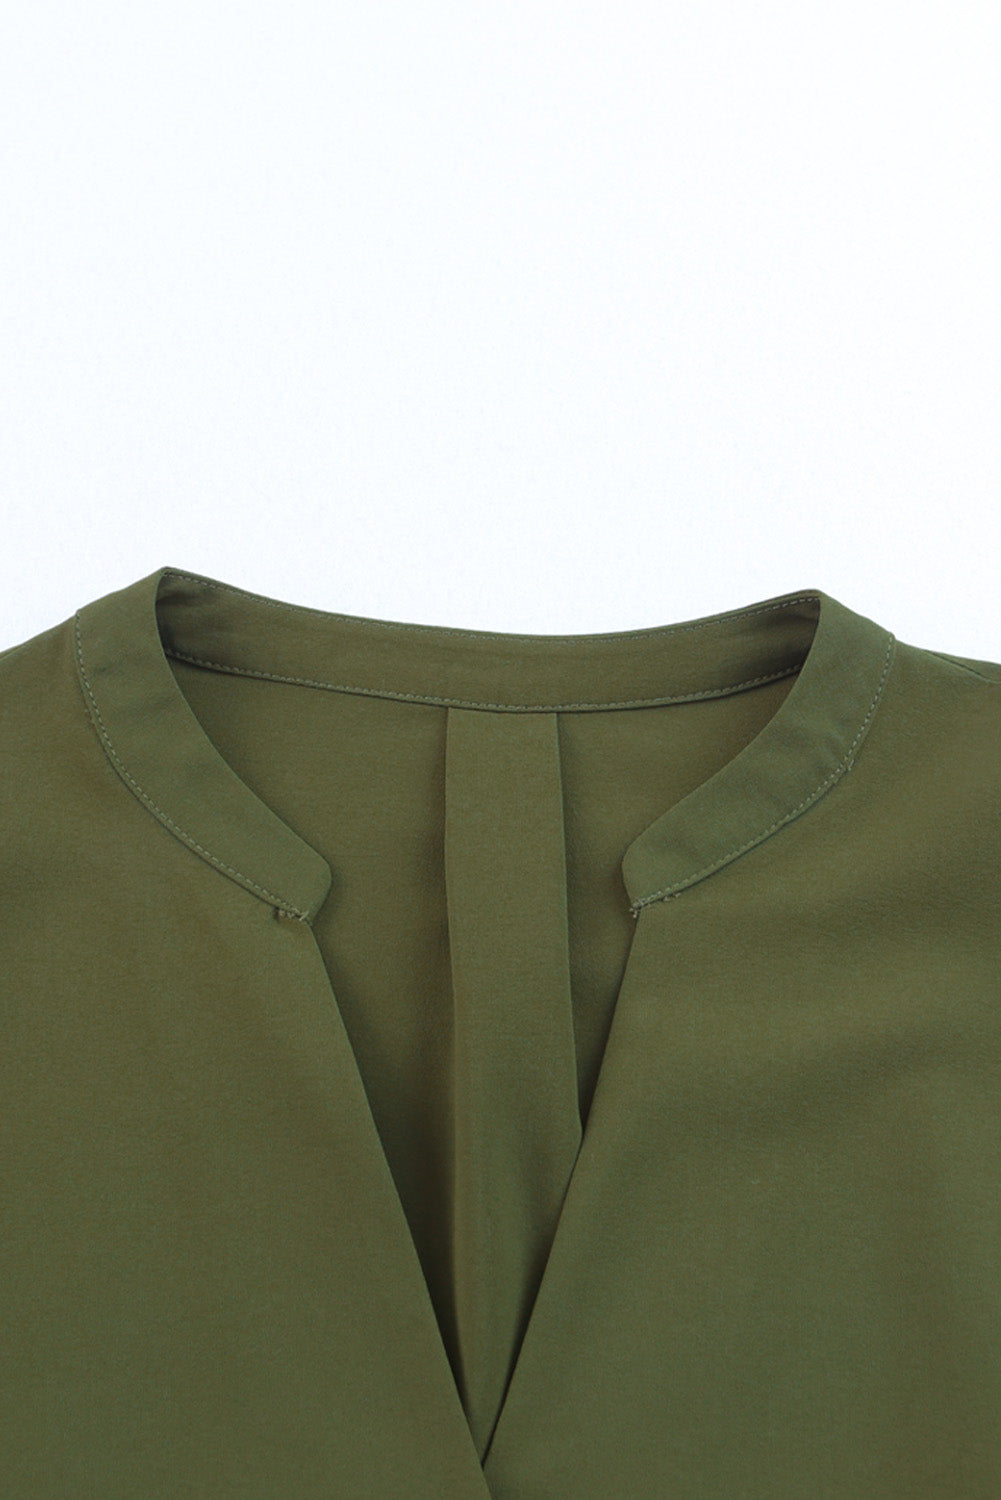 Grünes, geschlitztes Hemdkleid mit V-Ausschnitt und Rüschenärmeln